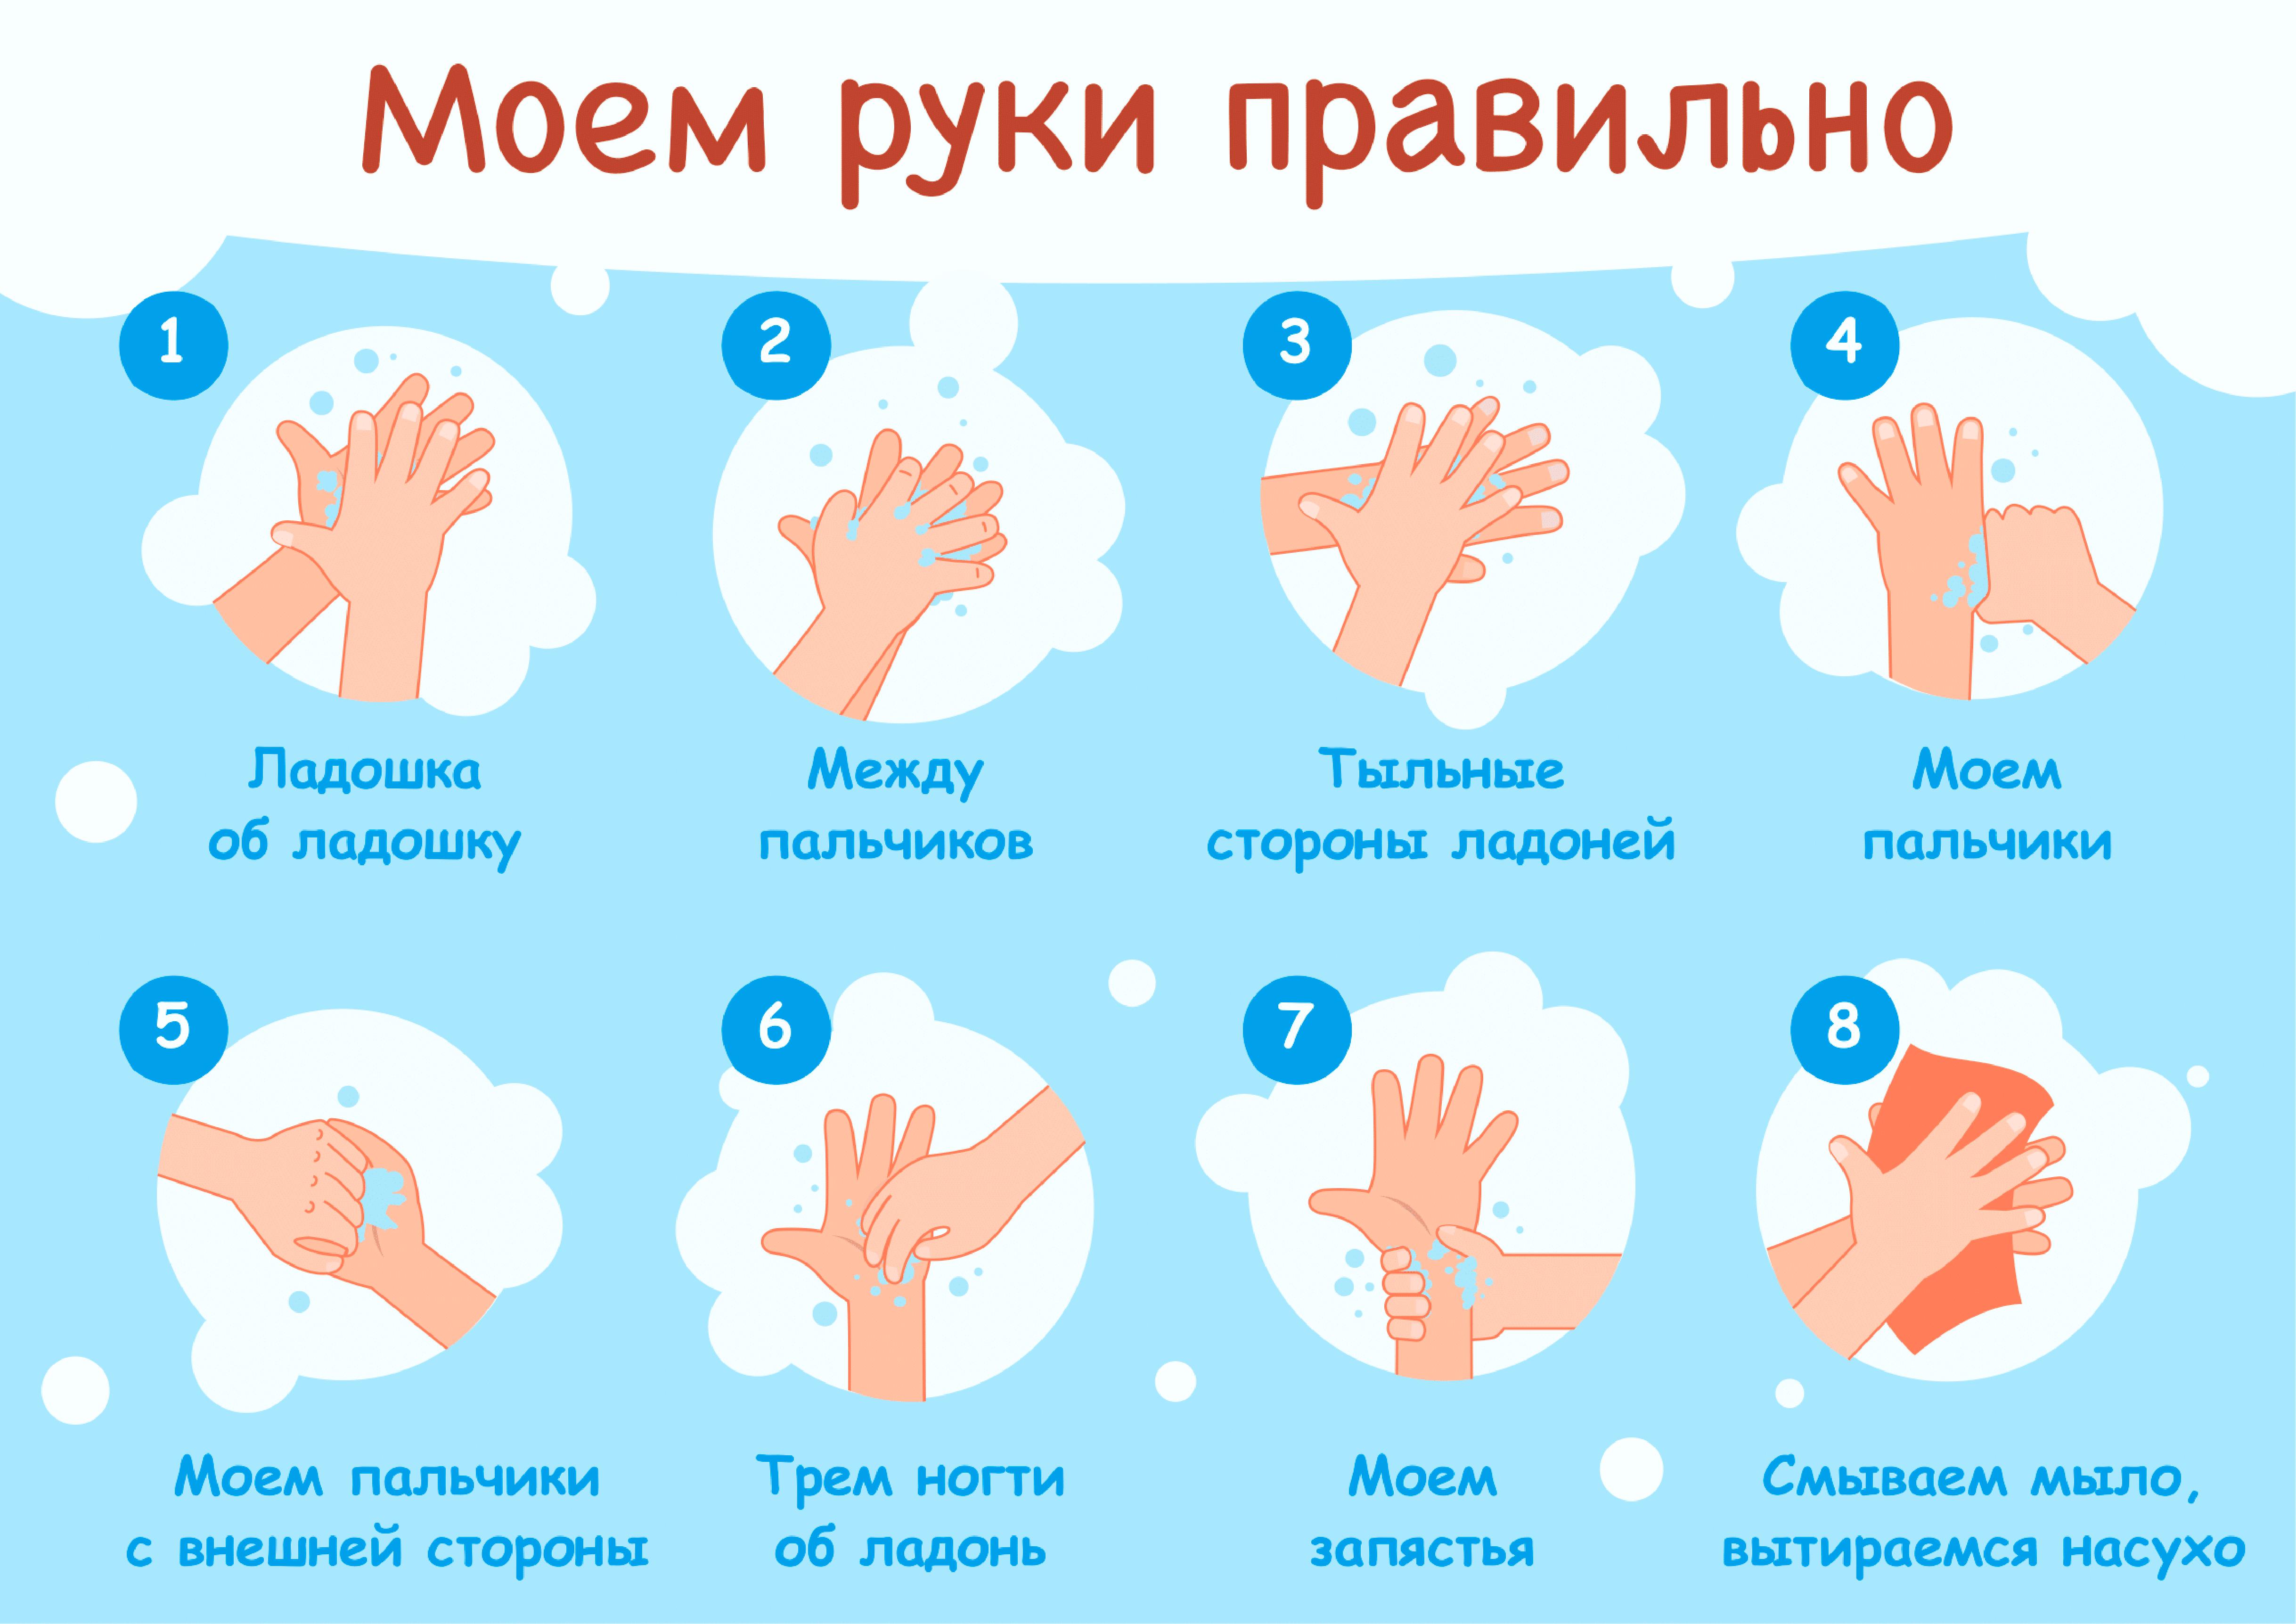 3 мытье рук. Мытьё рук. Алгоритм мытья рук. Как правильн Оымт ьруки. КККМ правильн омыть руки. Мытье рук дошкольников.